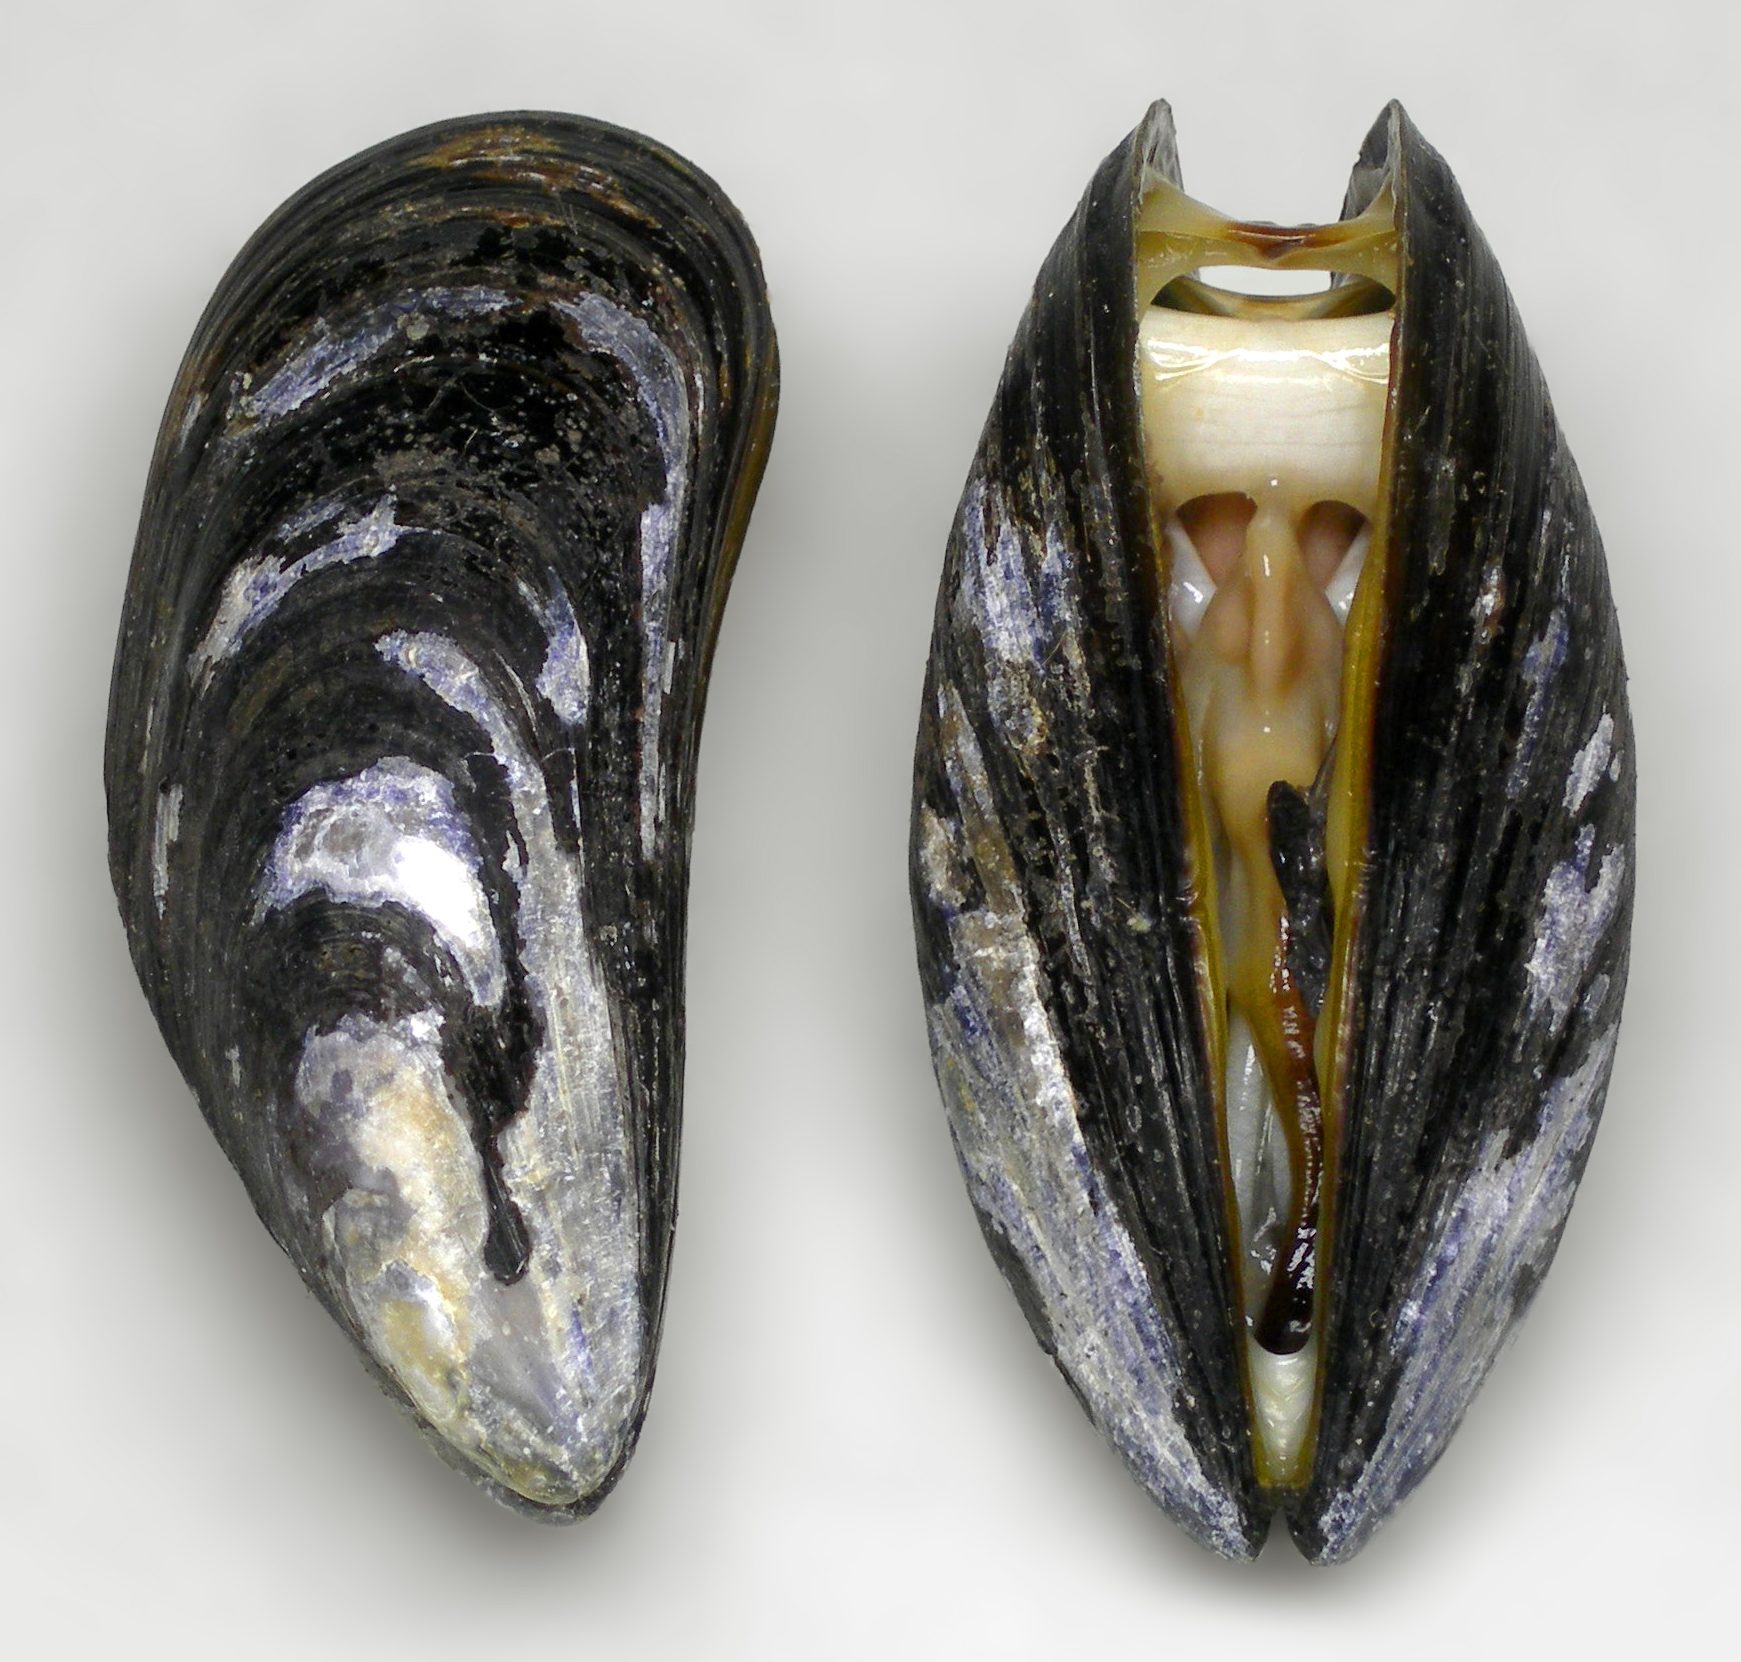 Двустворчатые моллюски мидии. Мидия Mytilus galloprovincialis. Моллюск Мидия дрейссена. Съедобная Мидия Mytilus edulis.